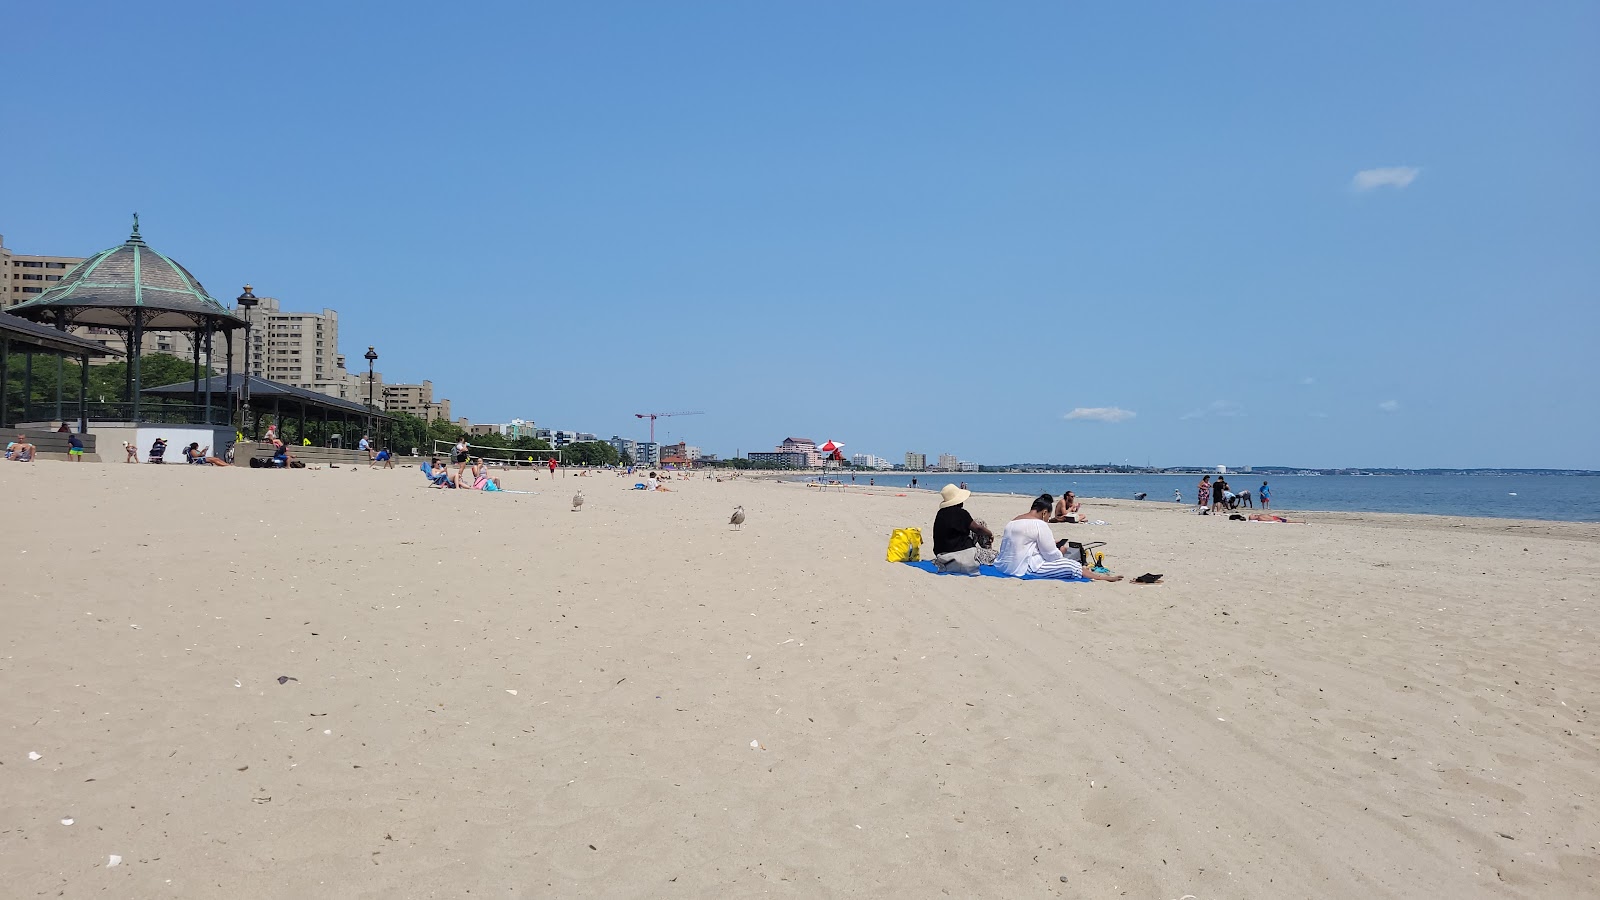 Revere beach'in fotoğrafı - rahatlamayı sevenler arasında popüler bir yer